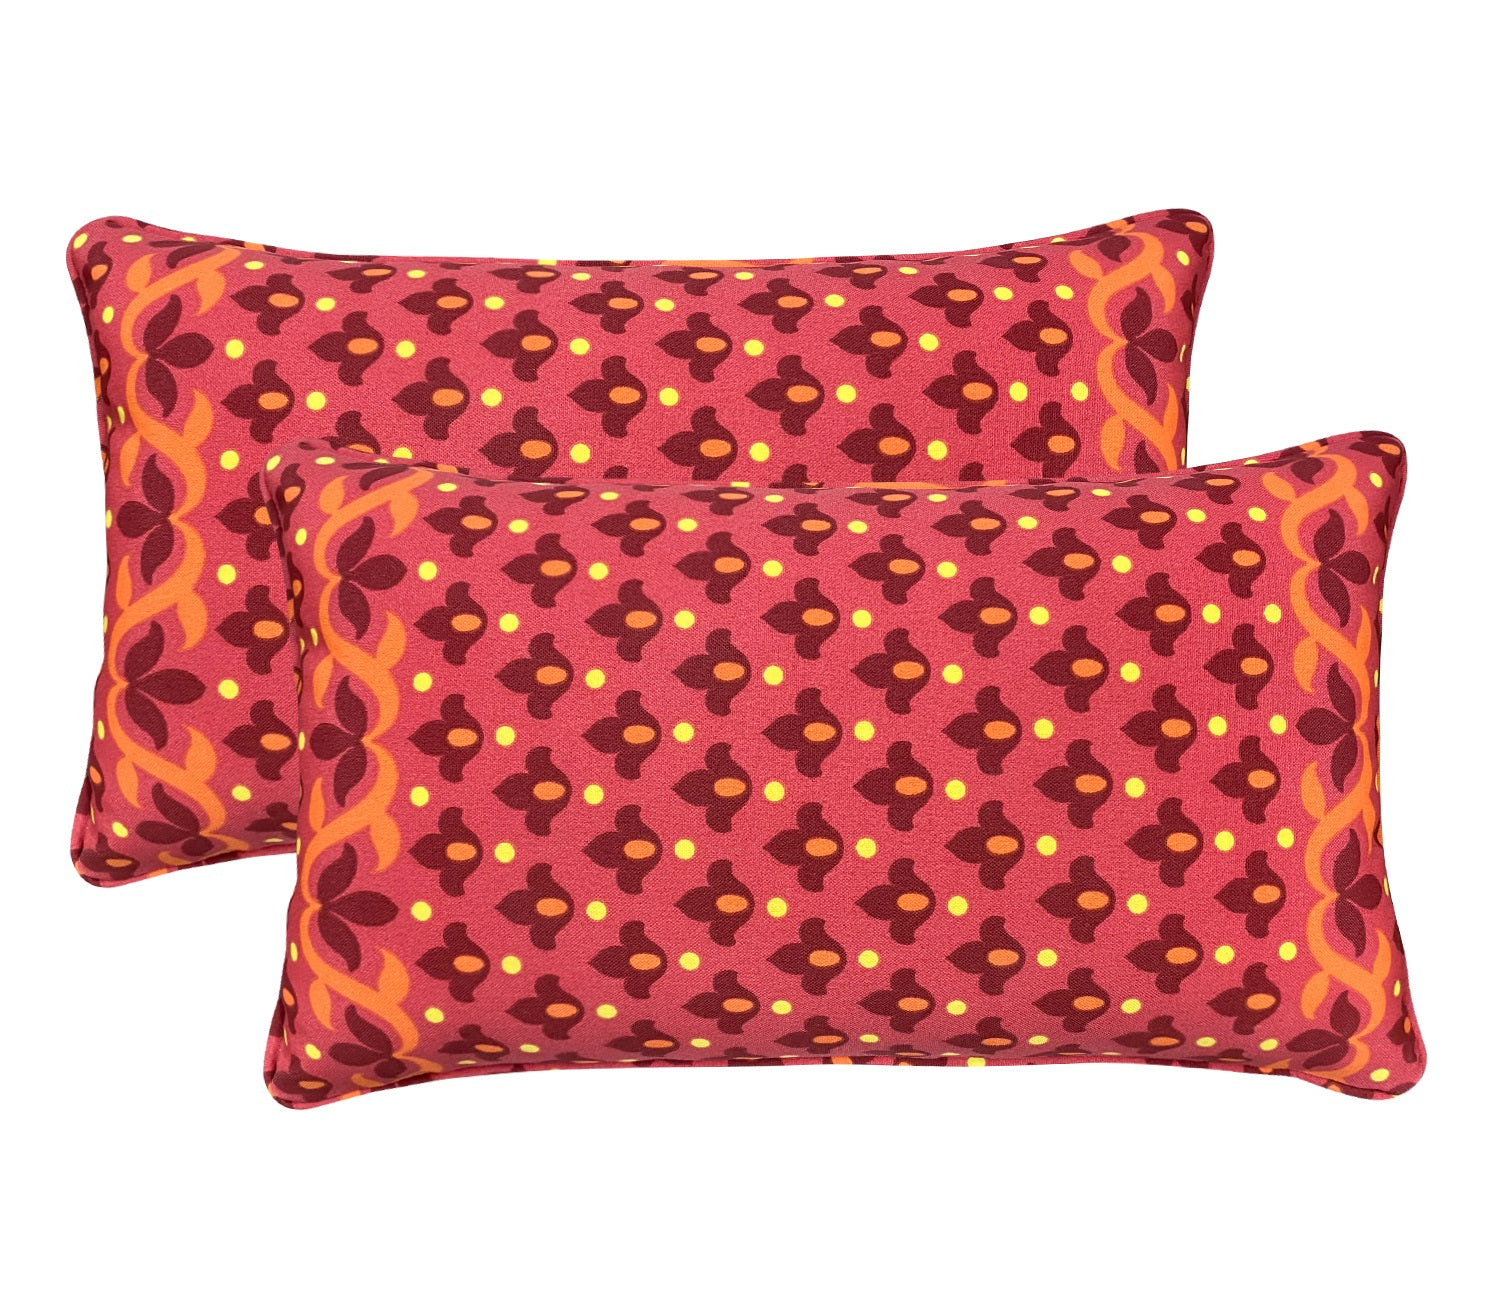 Outdoor Lumbar Throw Pillows, (12 x 20)